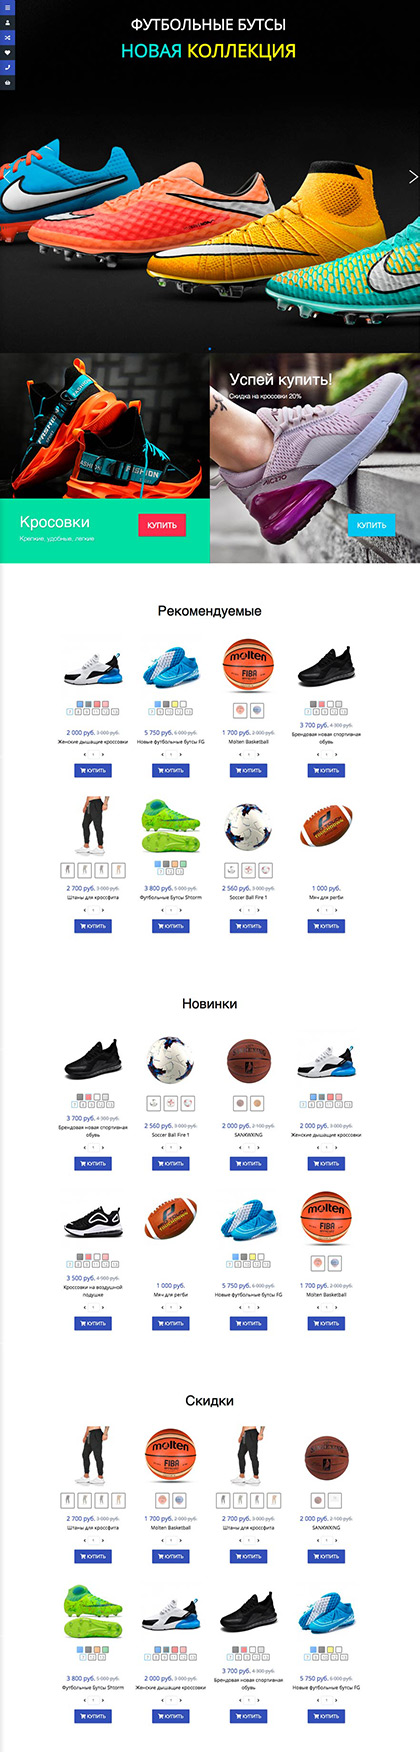 Изображение главной страницы шаблона магазина спортивной одежды и обуви